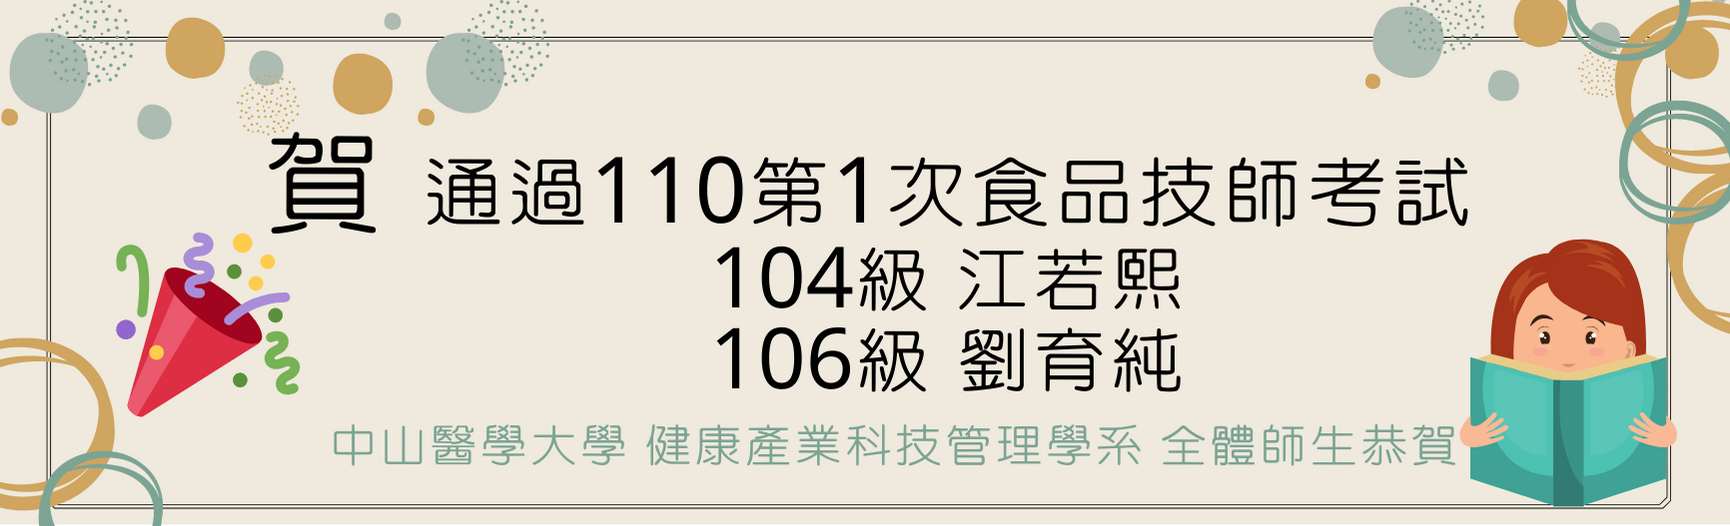 110-1食品技師賀圖